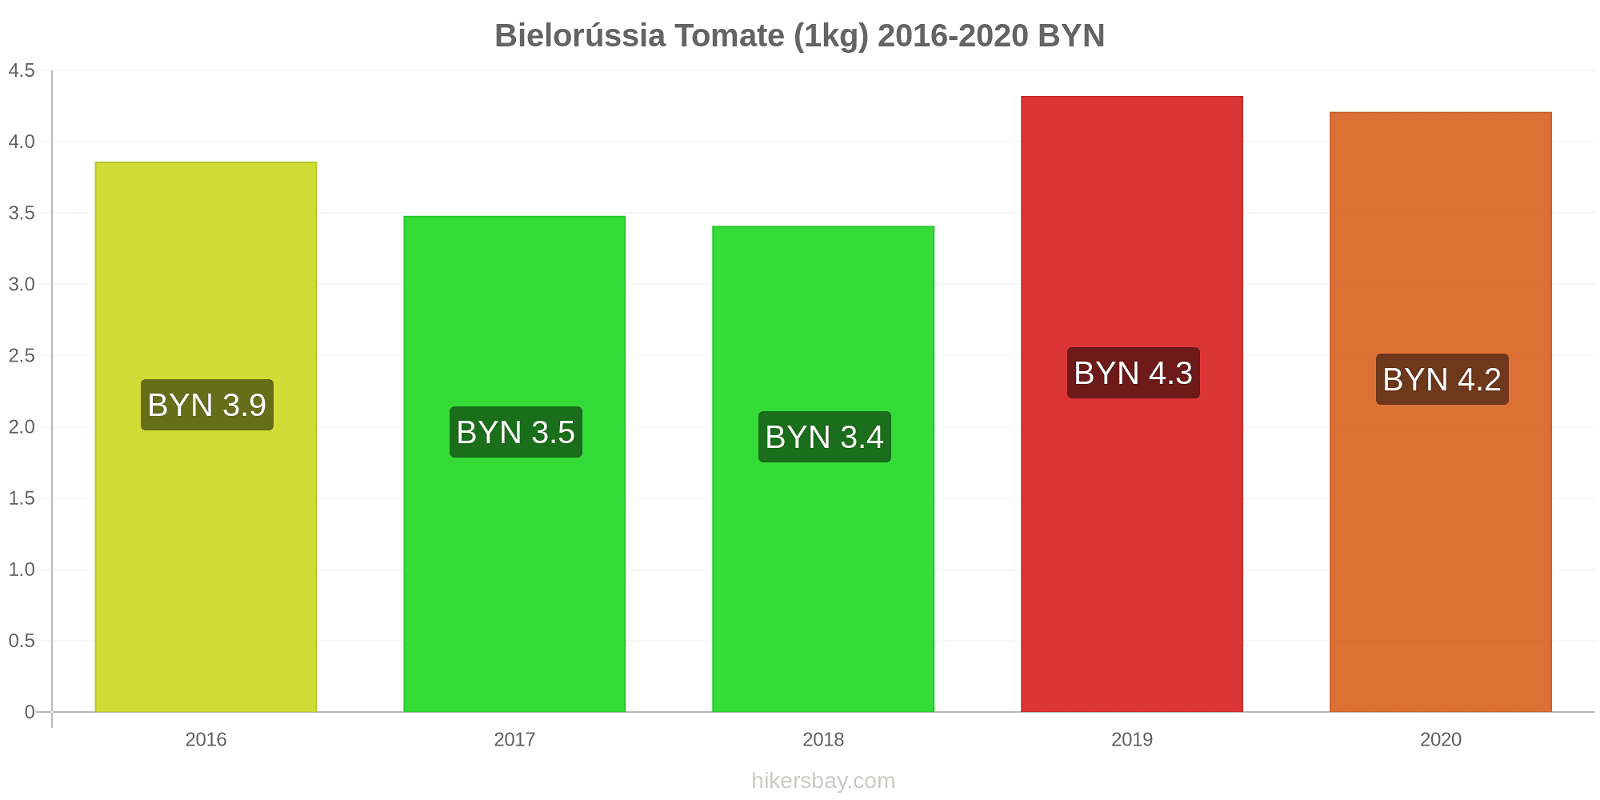 Bielorússia variação de preço Tomate (1kg) hikersbay.com